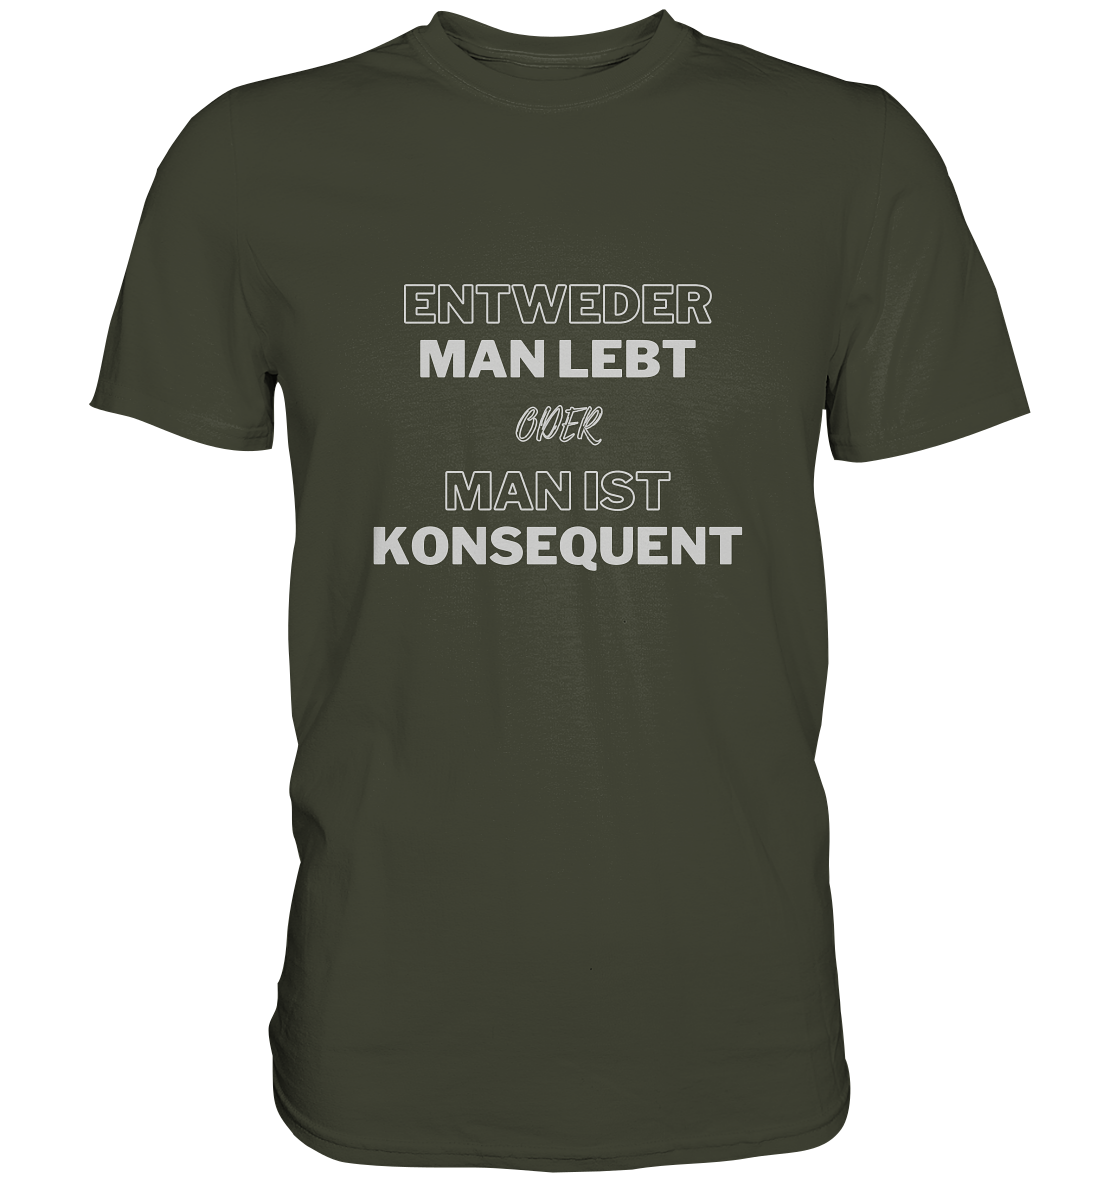 T-Shirt, Herren, Spruch, "Entweder man lebt oder man ist konsequent", khaki, oliv